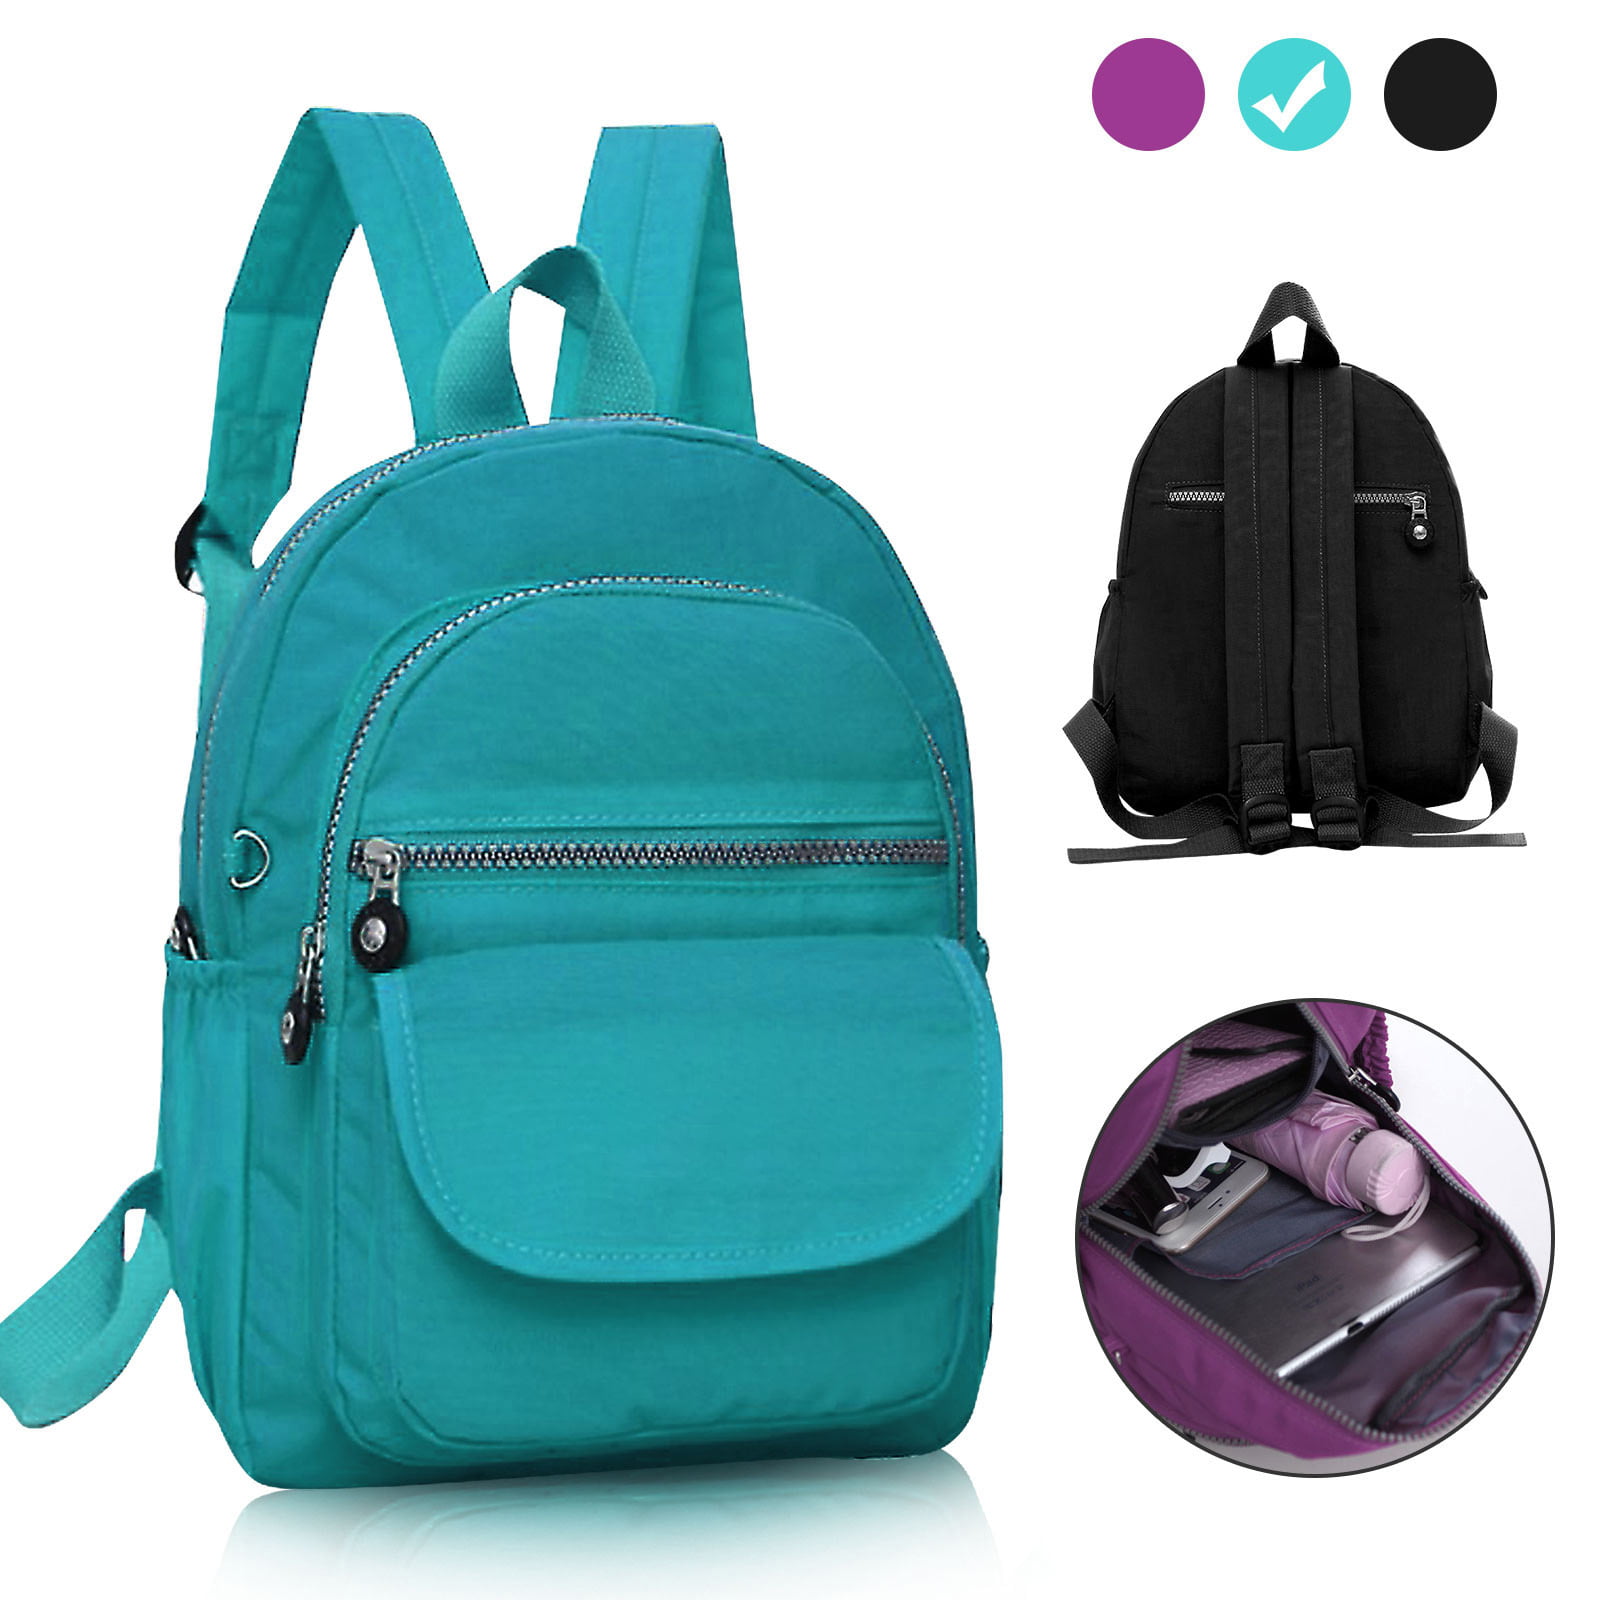 TSV - TSV Nylon Small Backpack for Women, Waterproof Mini Backpacks